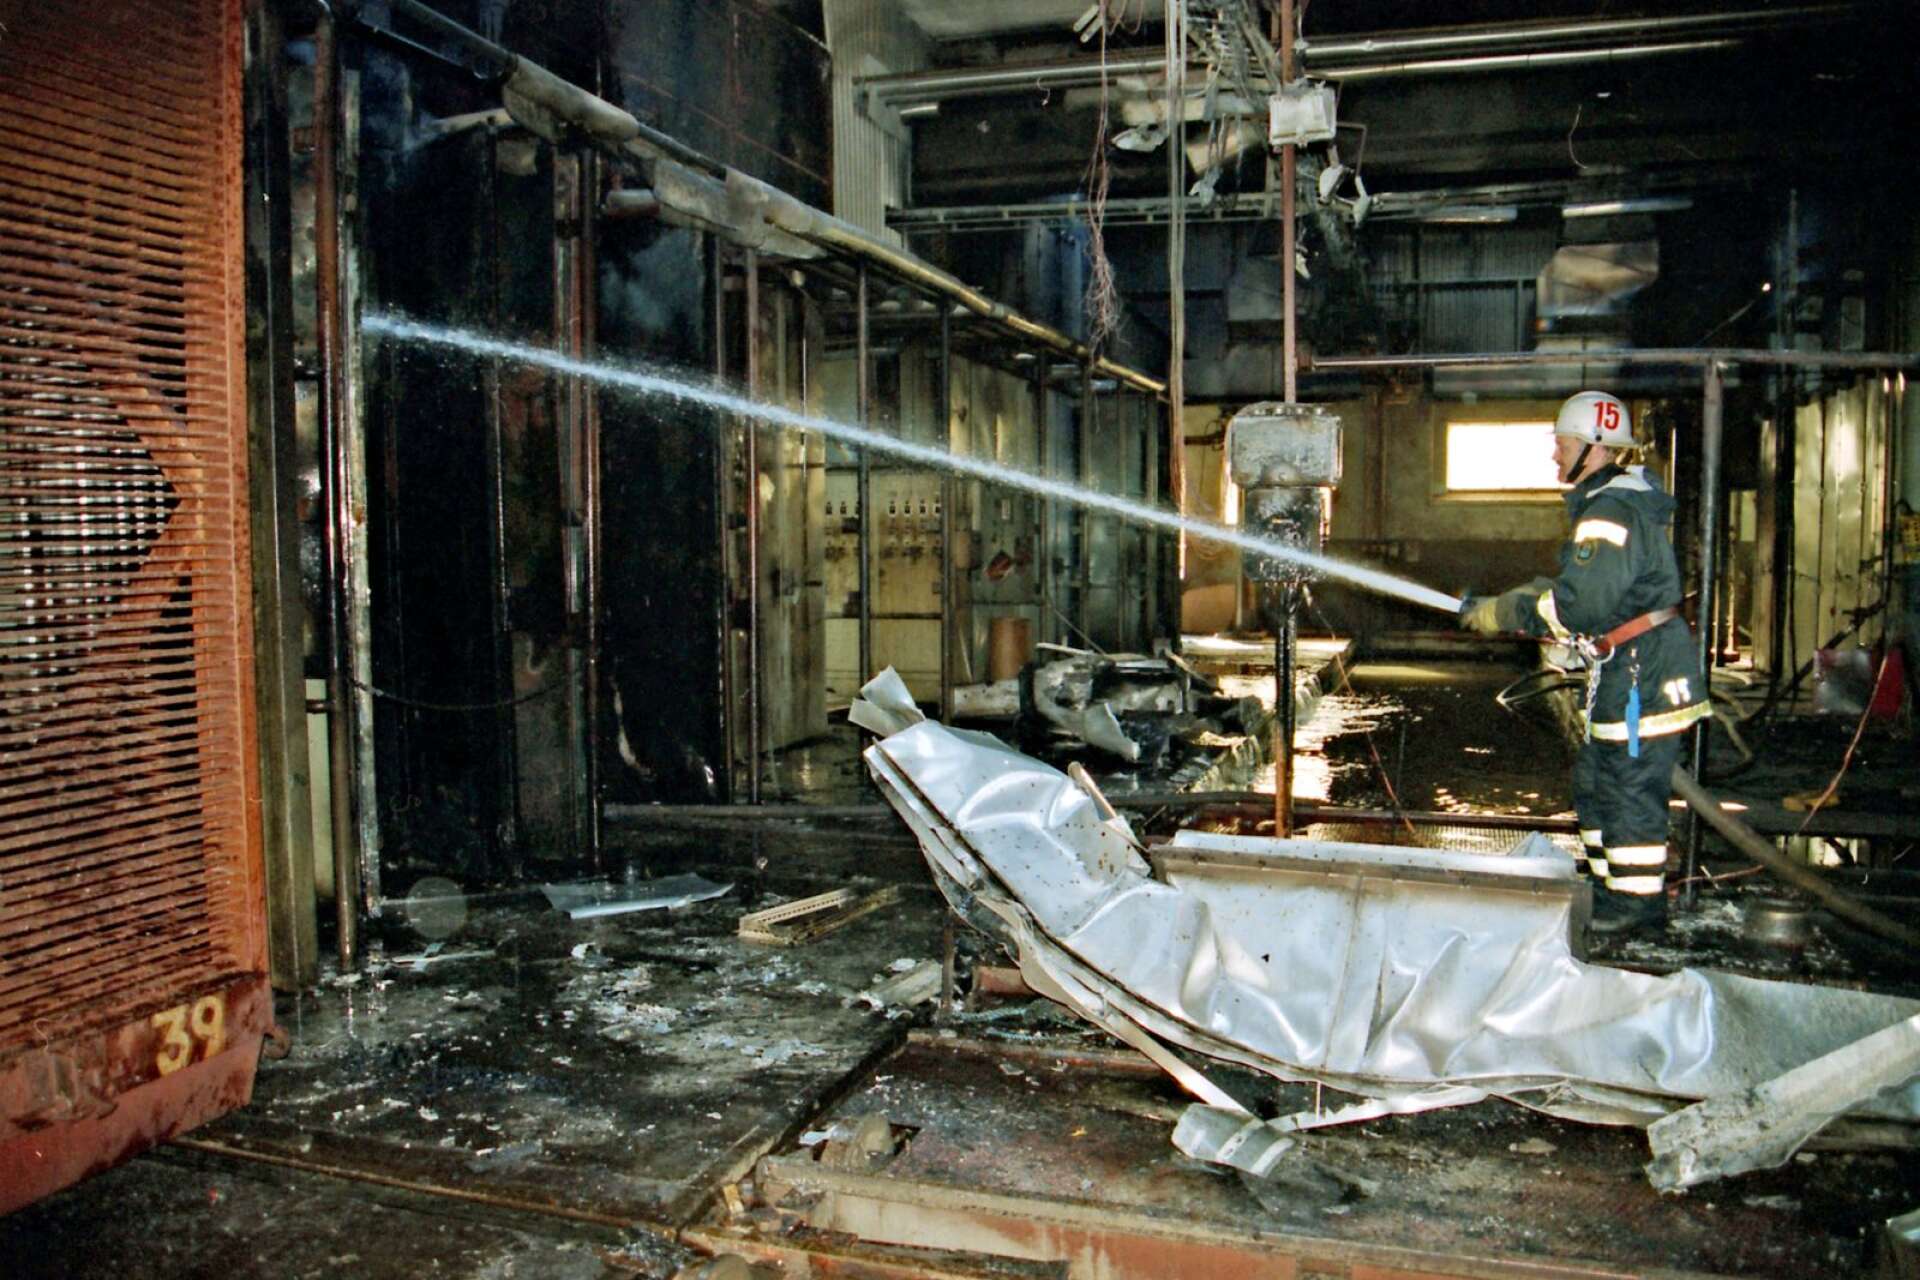 En brand utbröt hos Swanboard i Svaneholm. Det hände dagen innan de norska ägarna skulle ta beslut om eventuell nedläggning av någon av deras tre fabriker. Många befarade att branden kunde bli ödesdiger för Swanboard. Så blev det inte, åtminstone inte då. 